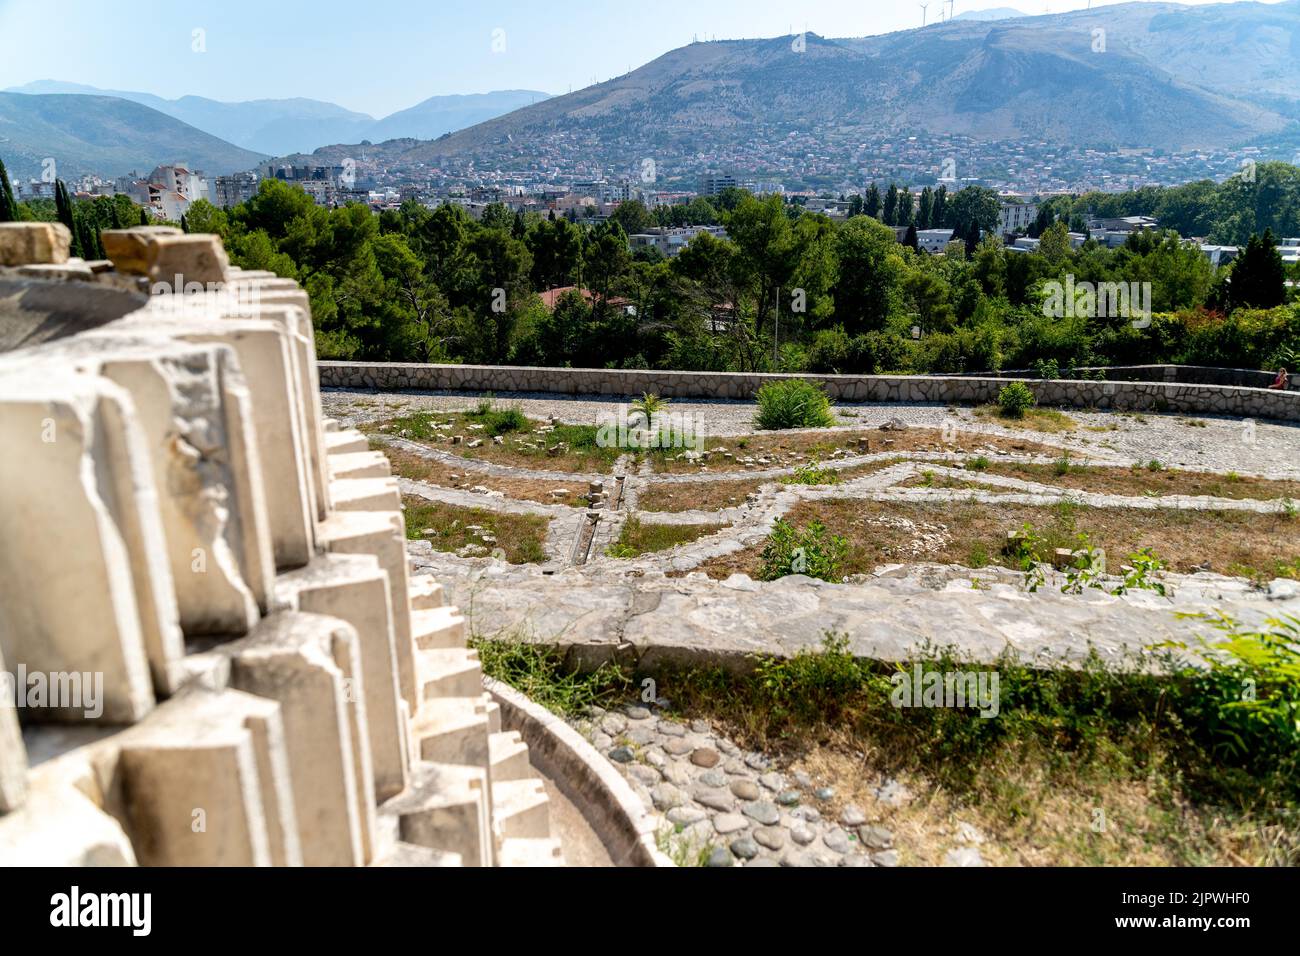 Mostar partyzan spomenik en Bosna et Hercegovina Banque D'Images